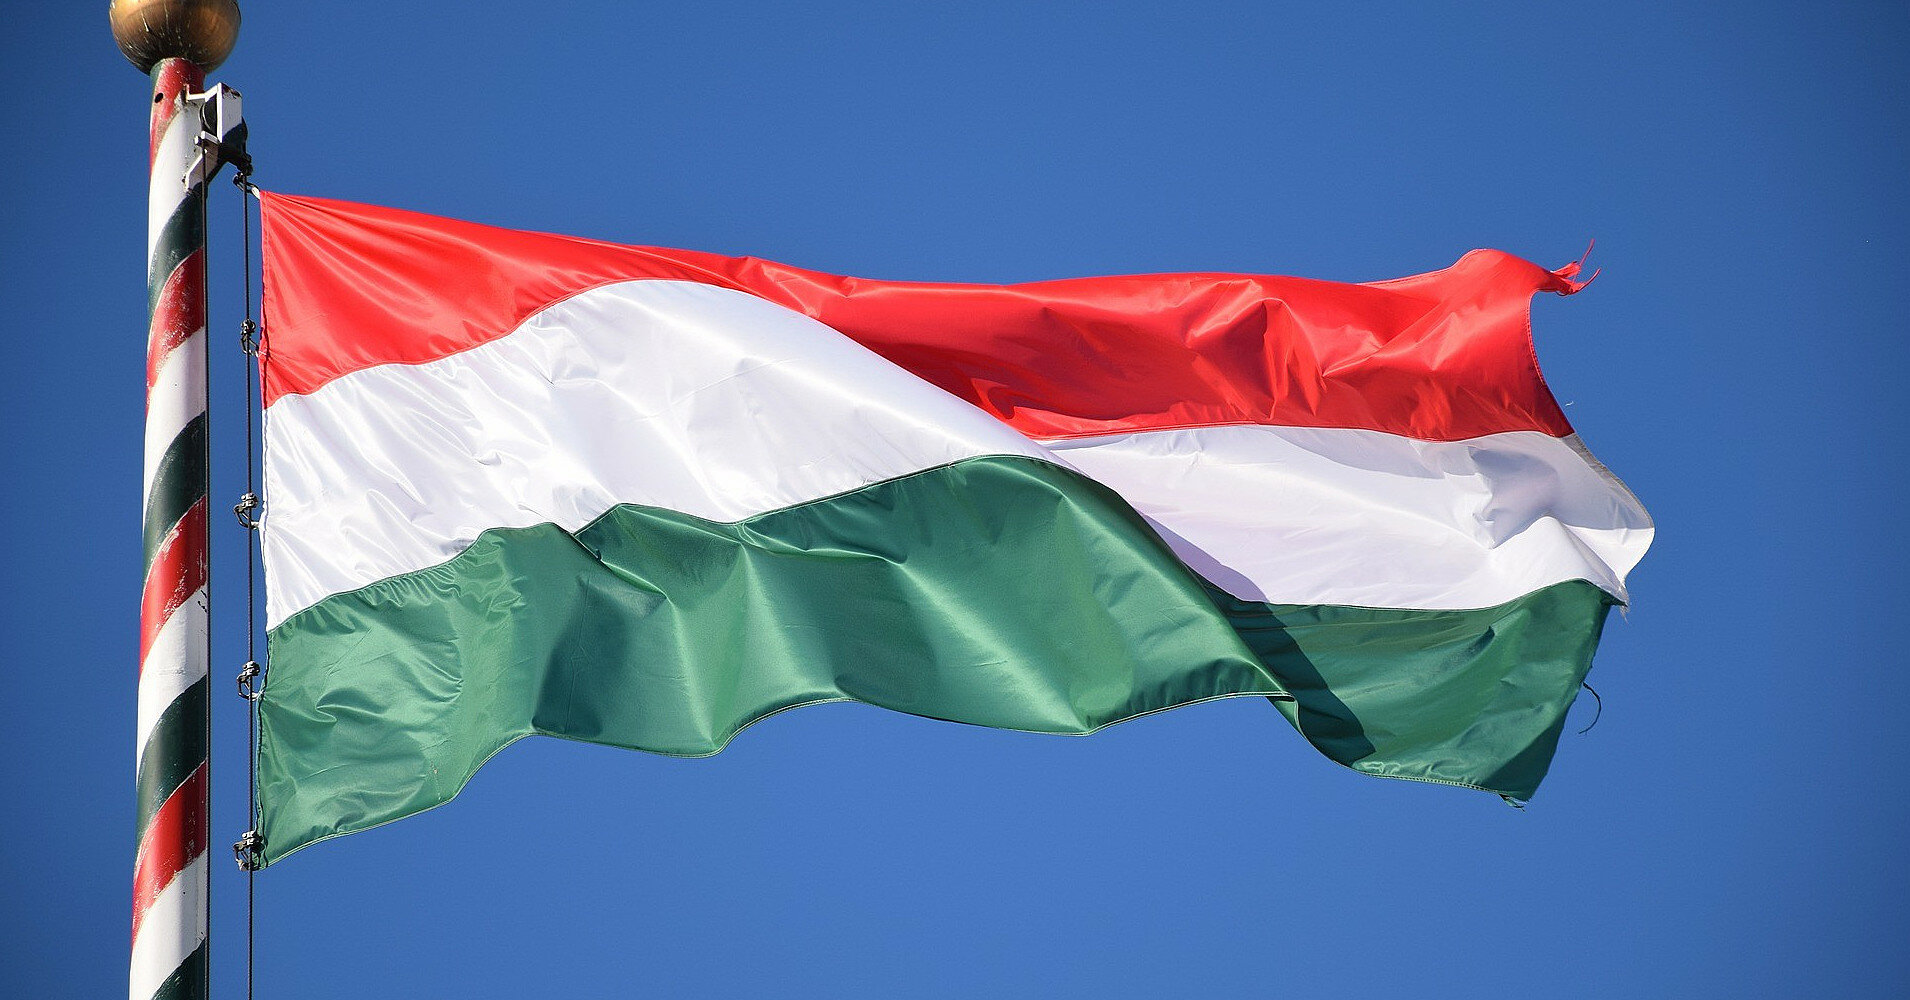 ЗМІ: Угорщина заблокувала спільну заяву ЄС про ордер на арешт Путіна в Гаазі